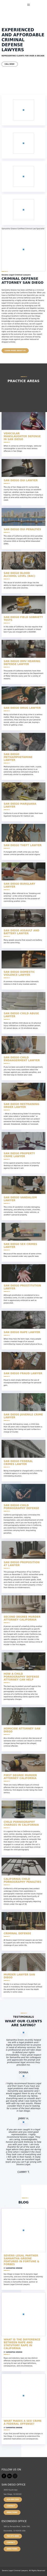 Sevens Legal APC - San Diego CA Lawyers